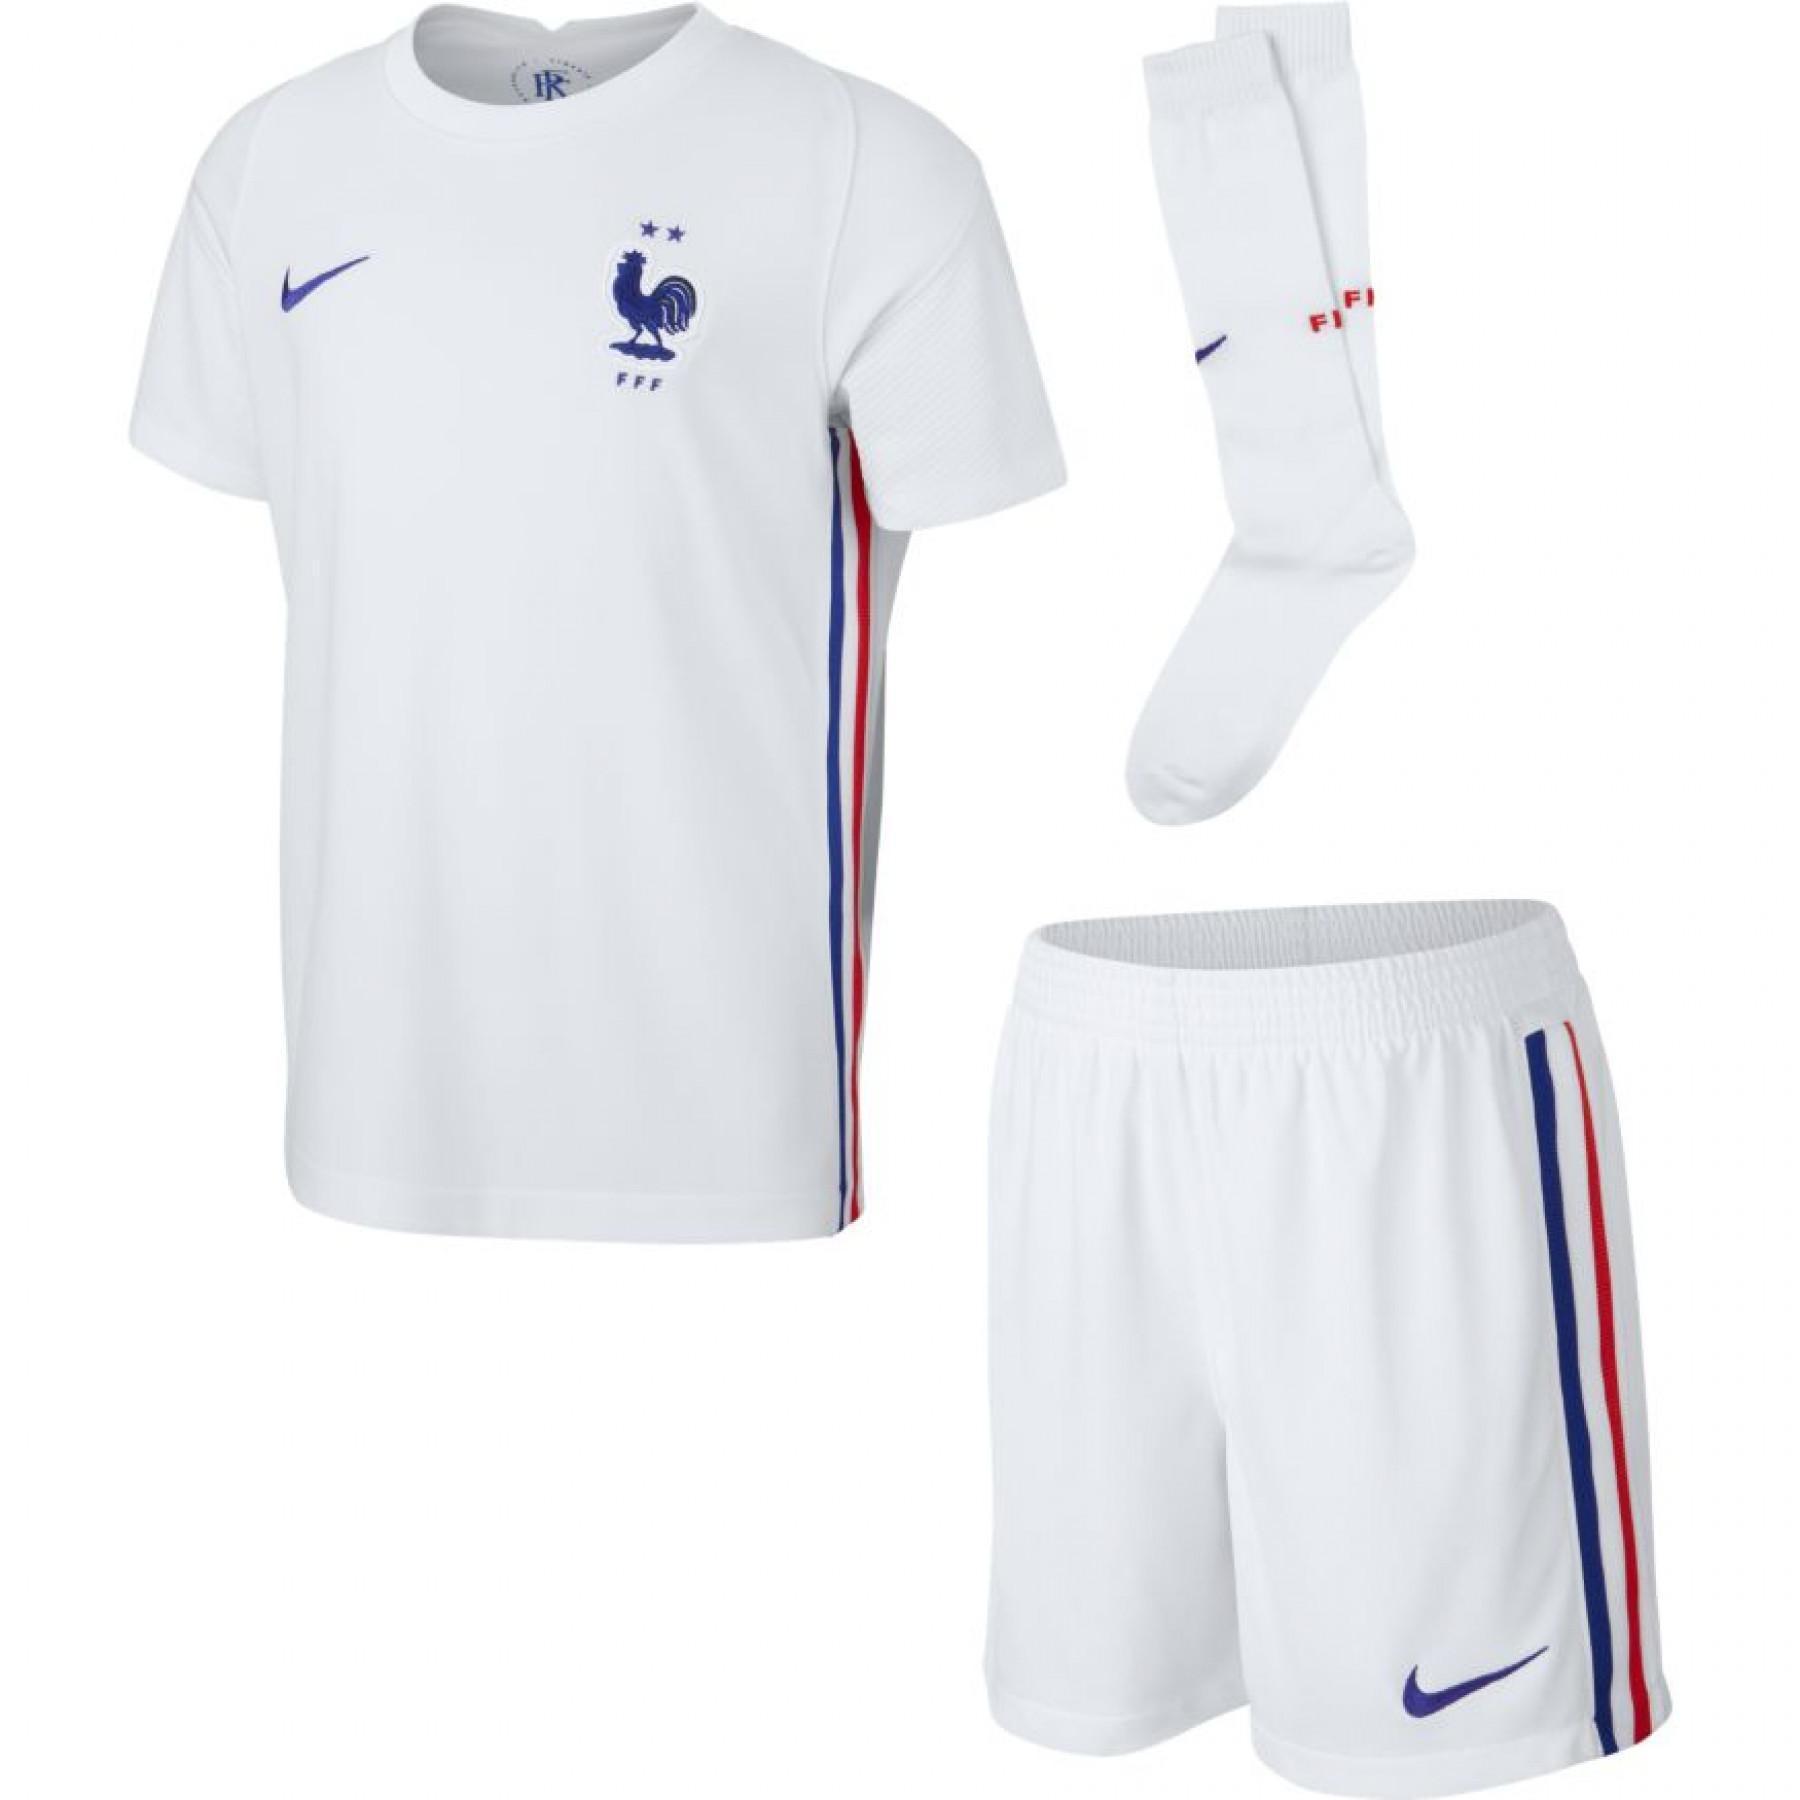 Junior Mini-kit outside France in 2021